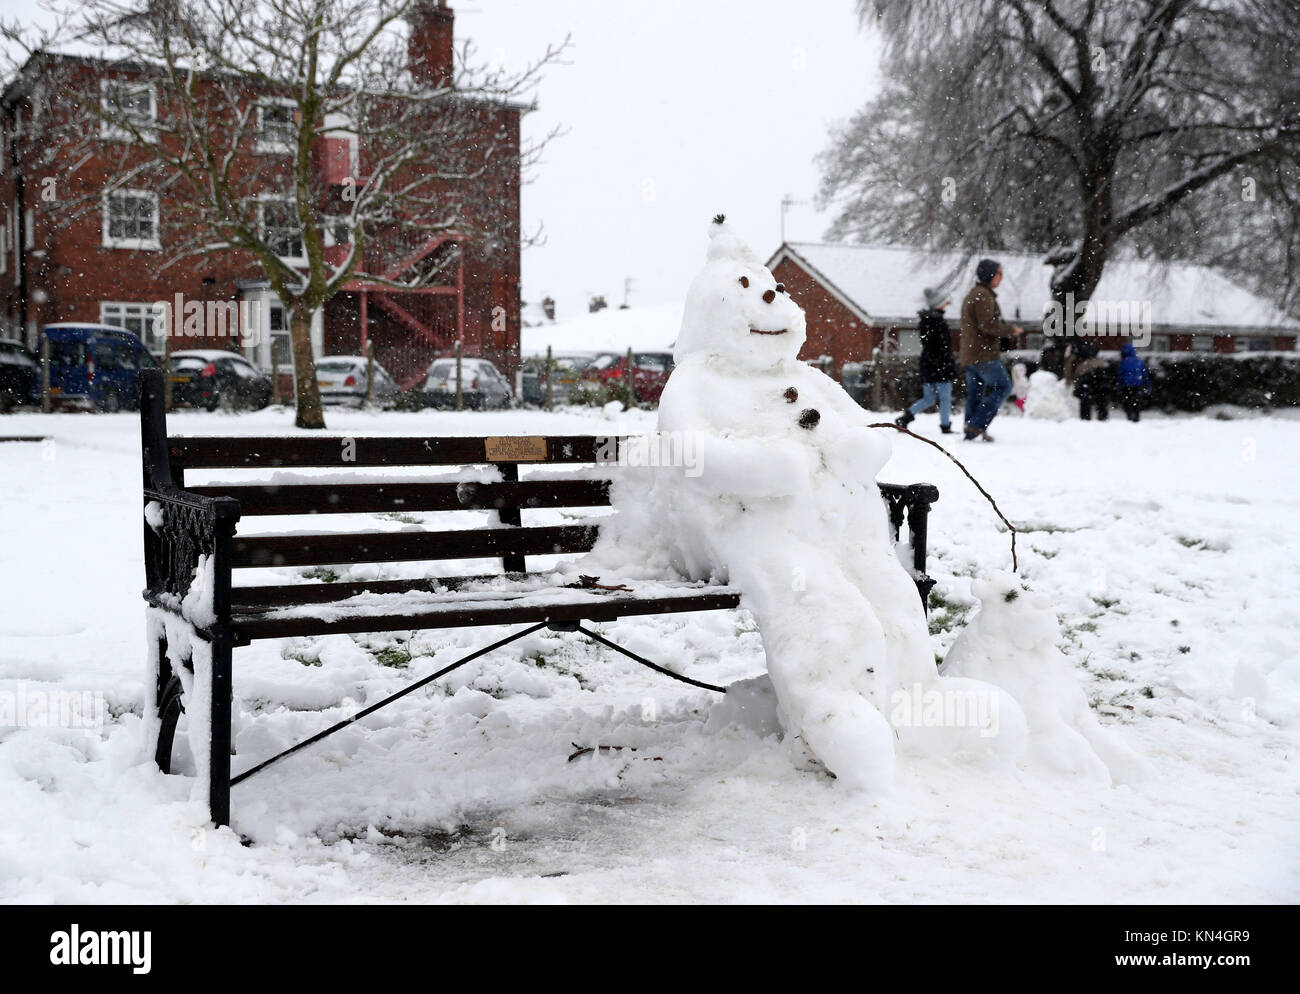 Ein Schneemann auf einer Bank, Worcester, wie starker Schneefall über Teile von Großbritannien weitverbreitete Störungen verursacht, schließen Straßen und Erdung Flüge am Flughafen. Stockfoto